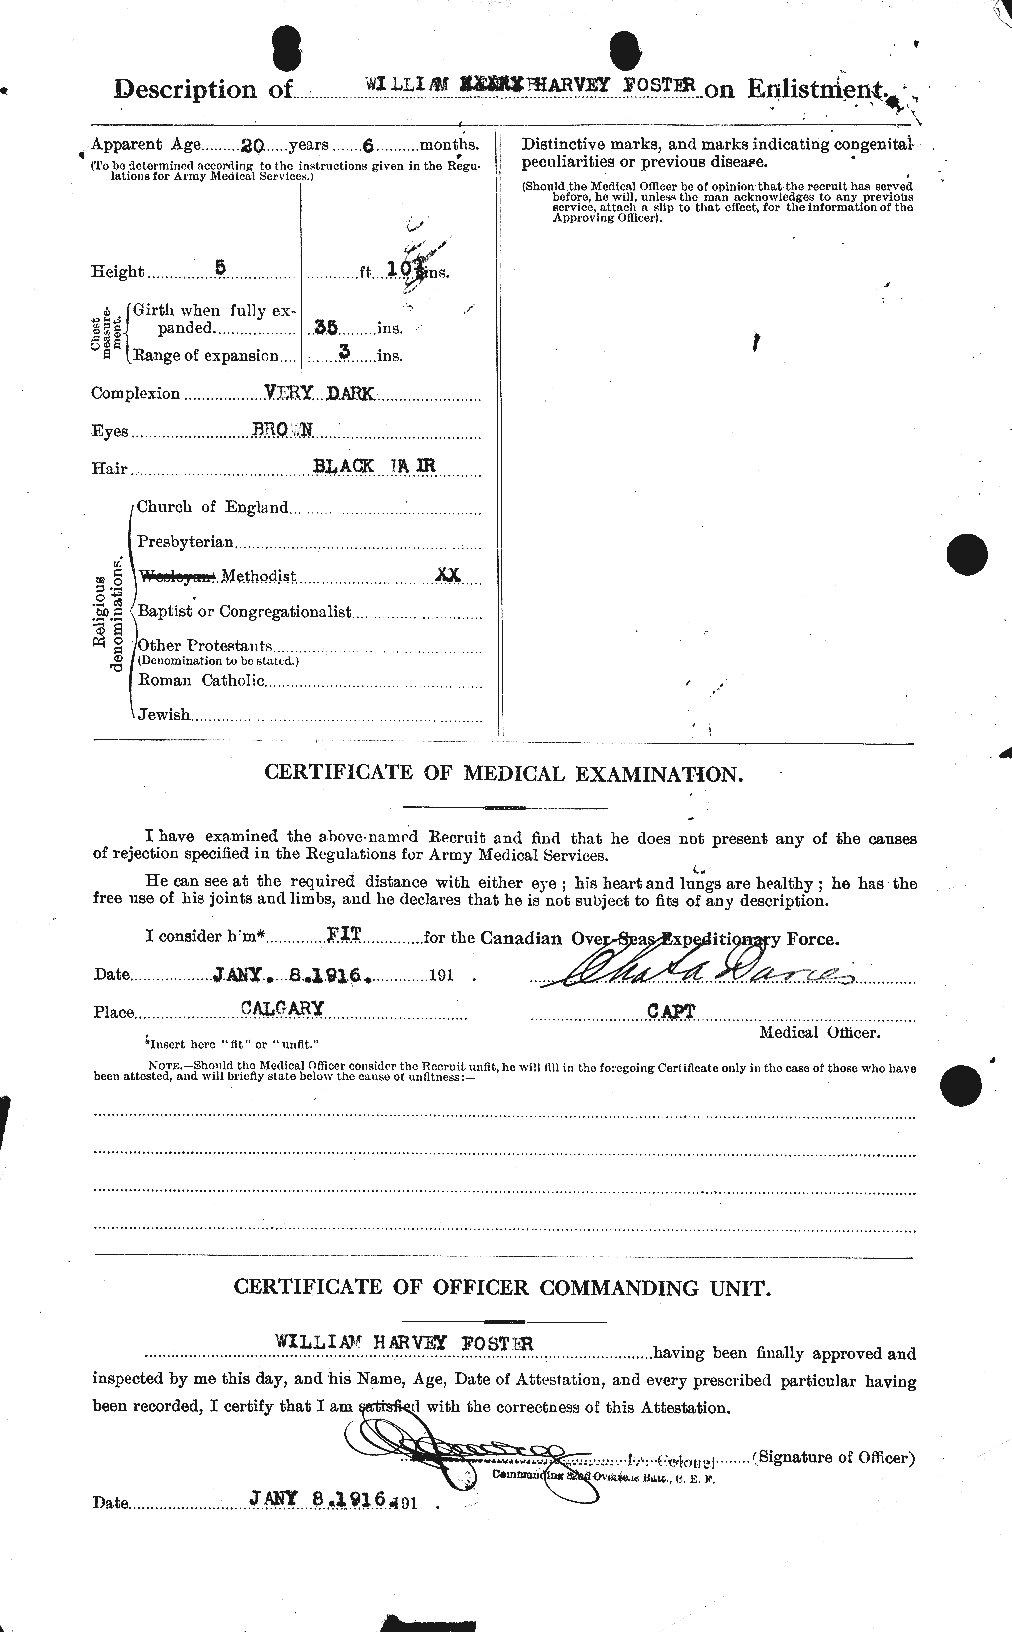 Dossiers du Personnel de la Première Guerre mondiale - CEC 328749b